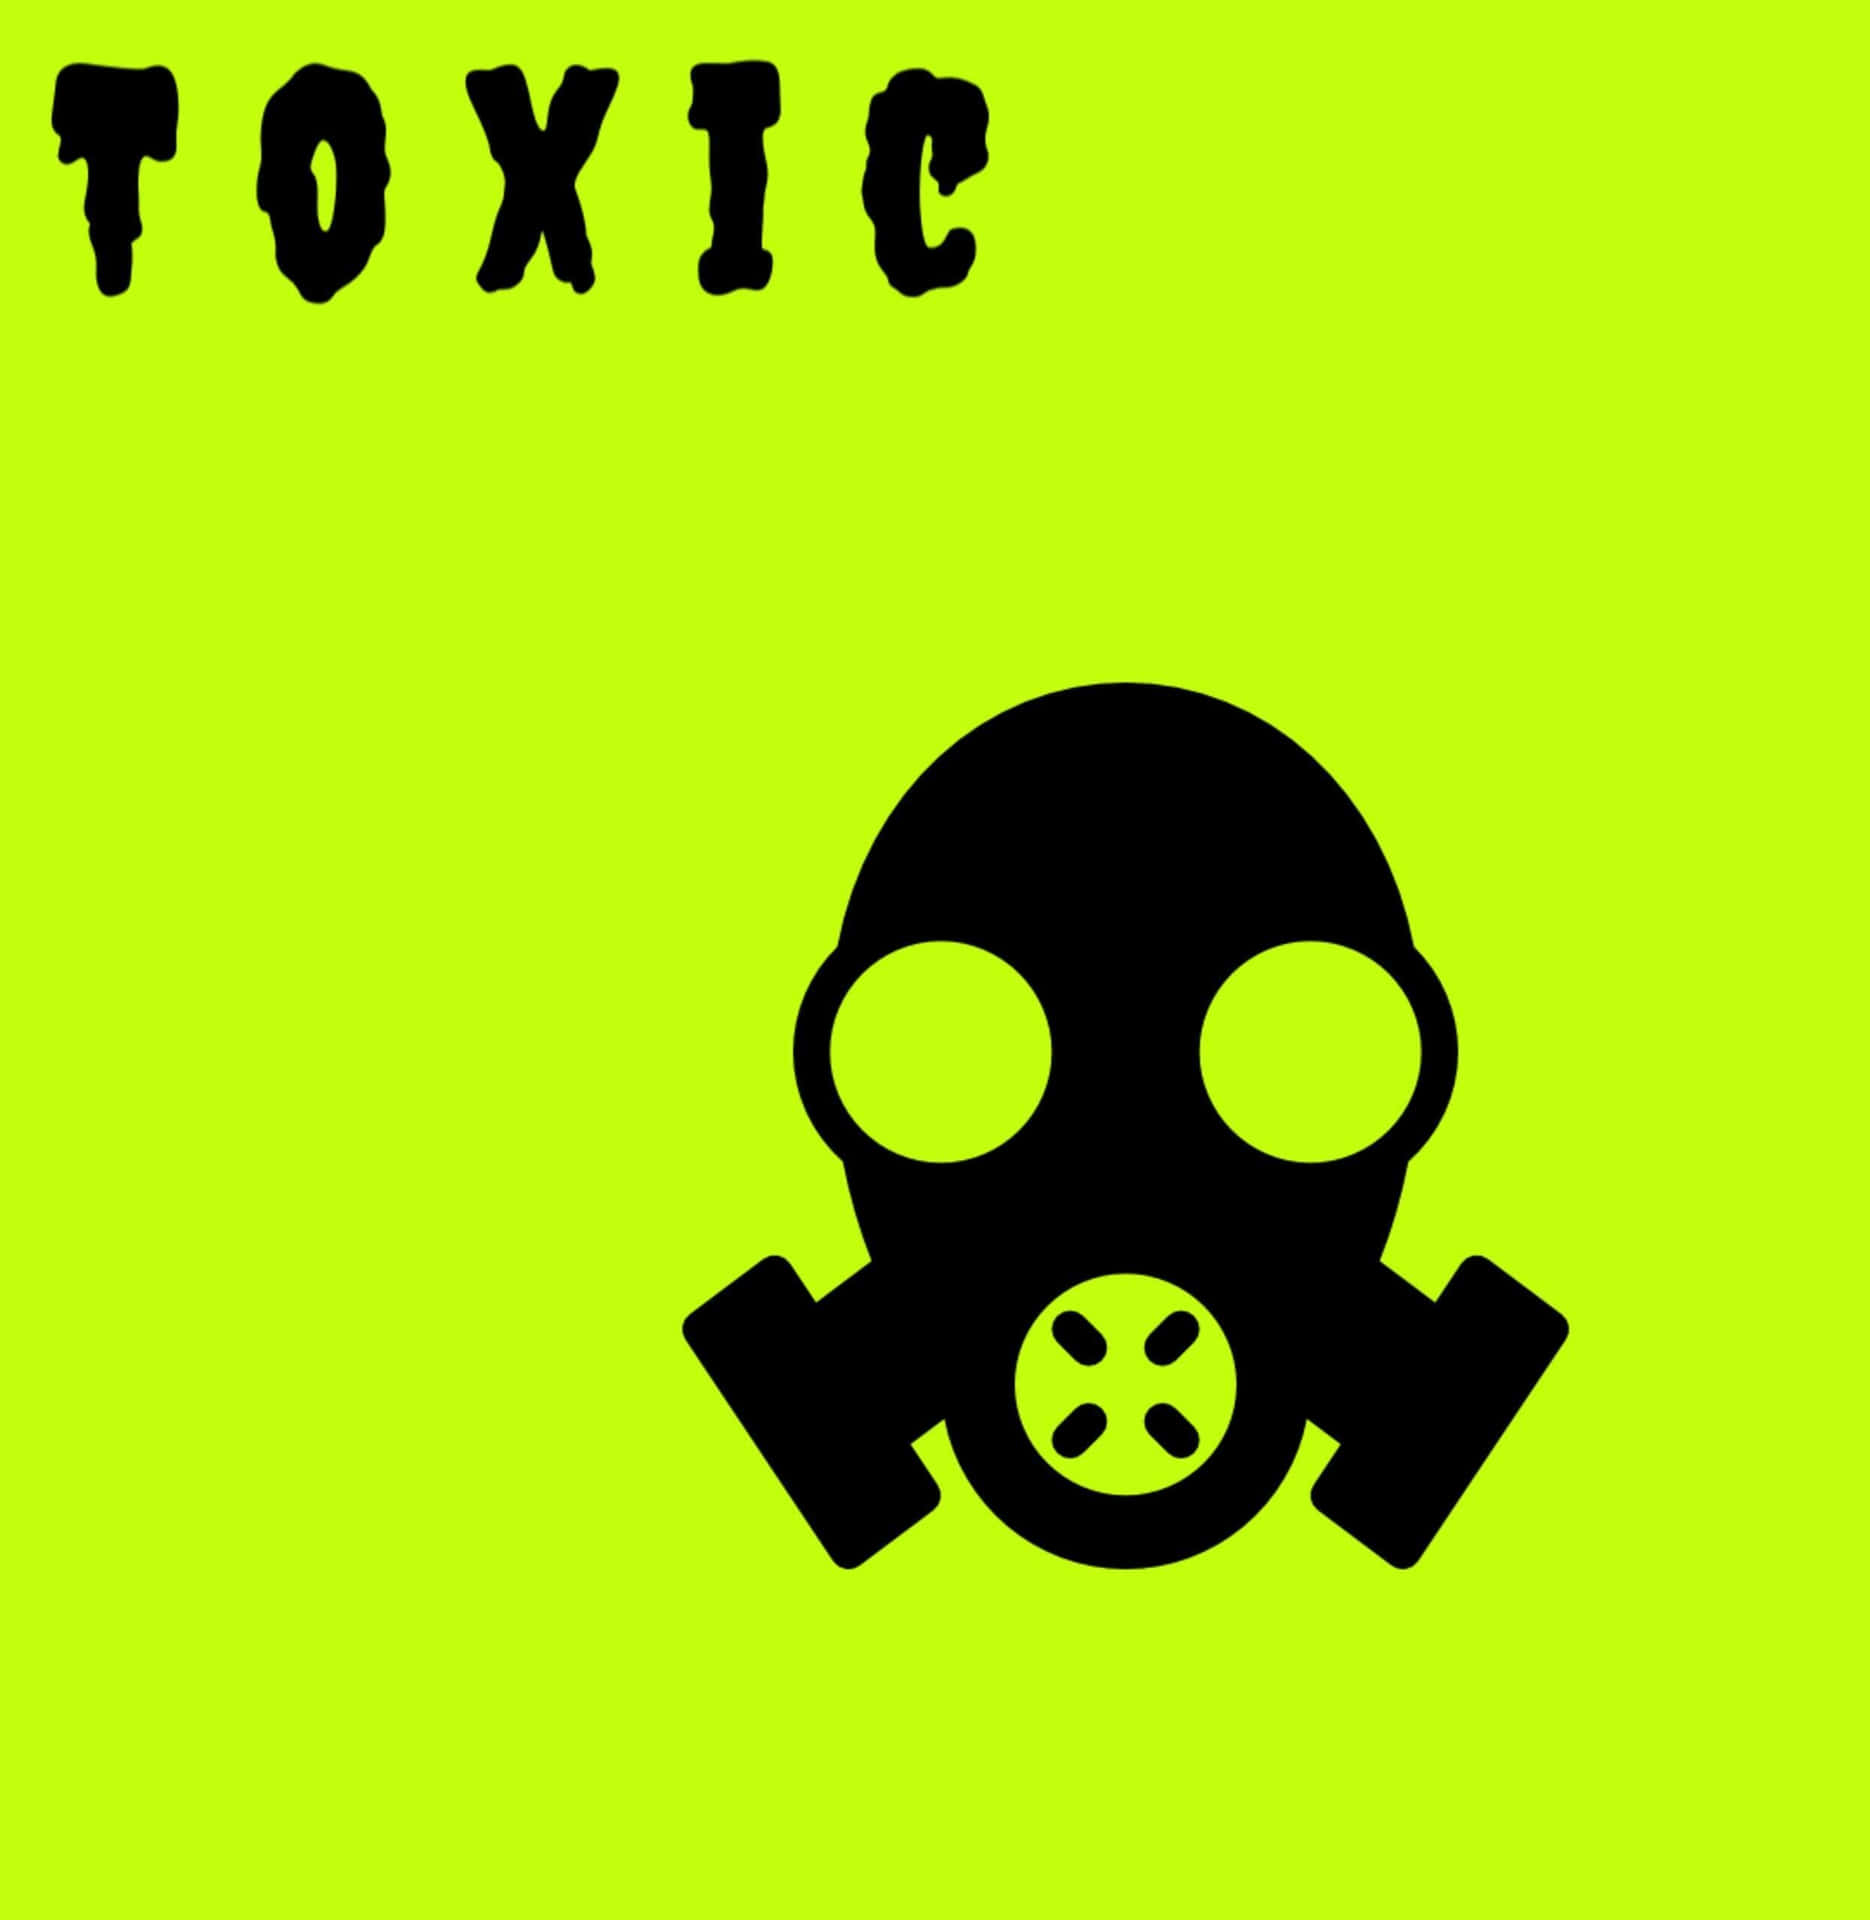 Ама токсик. Токсик. Трек Toxic. Токсичный альбом. Toxic песня обложка.